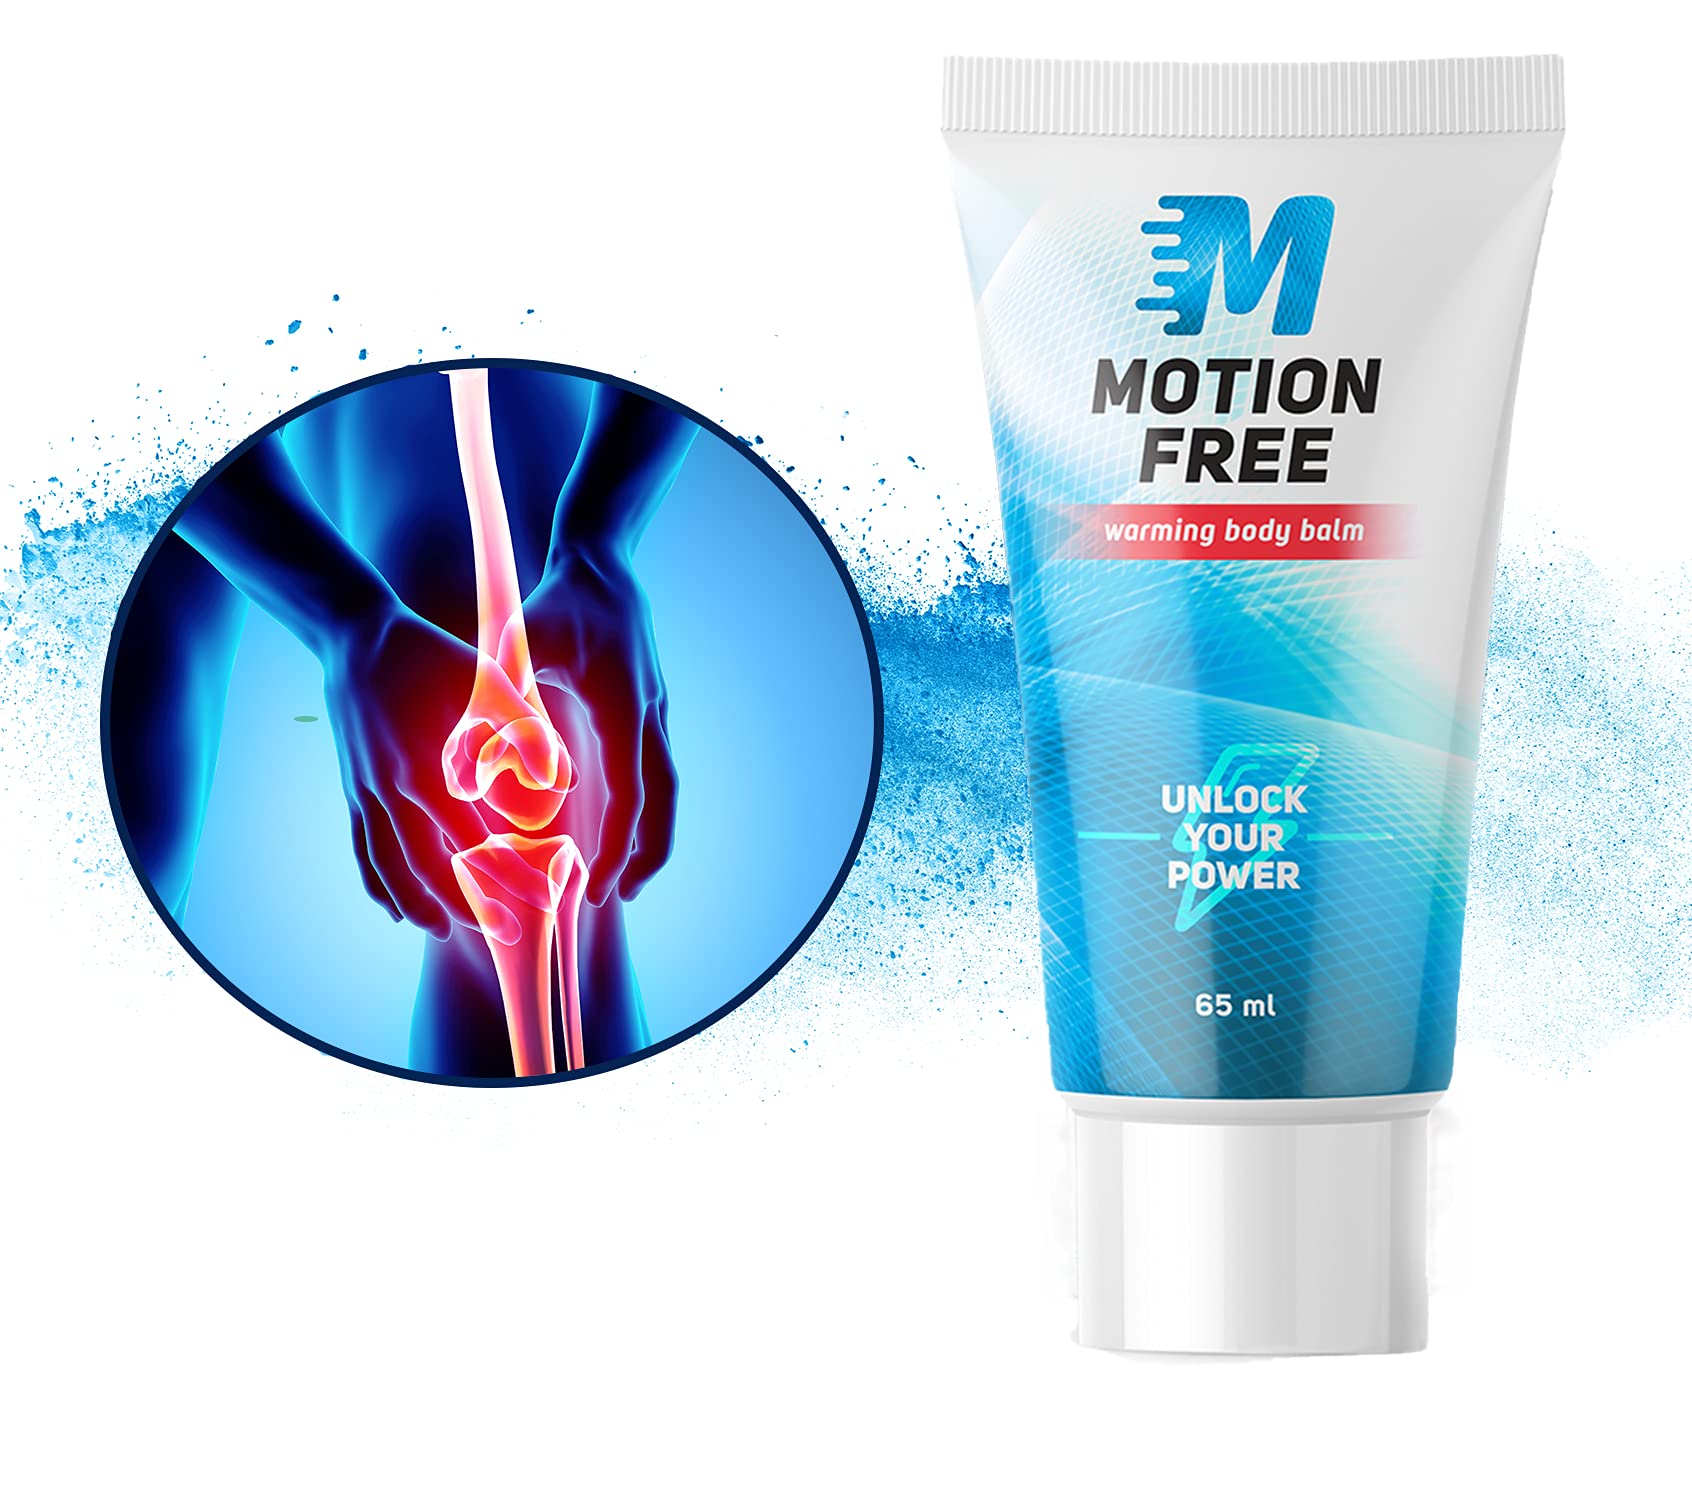 Motion free - Plafar - Farmacia Tei - Dr max - Catena